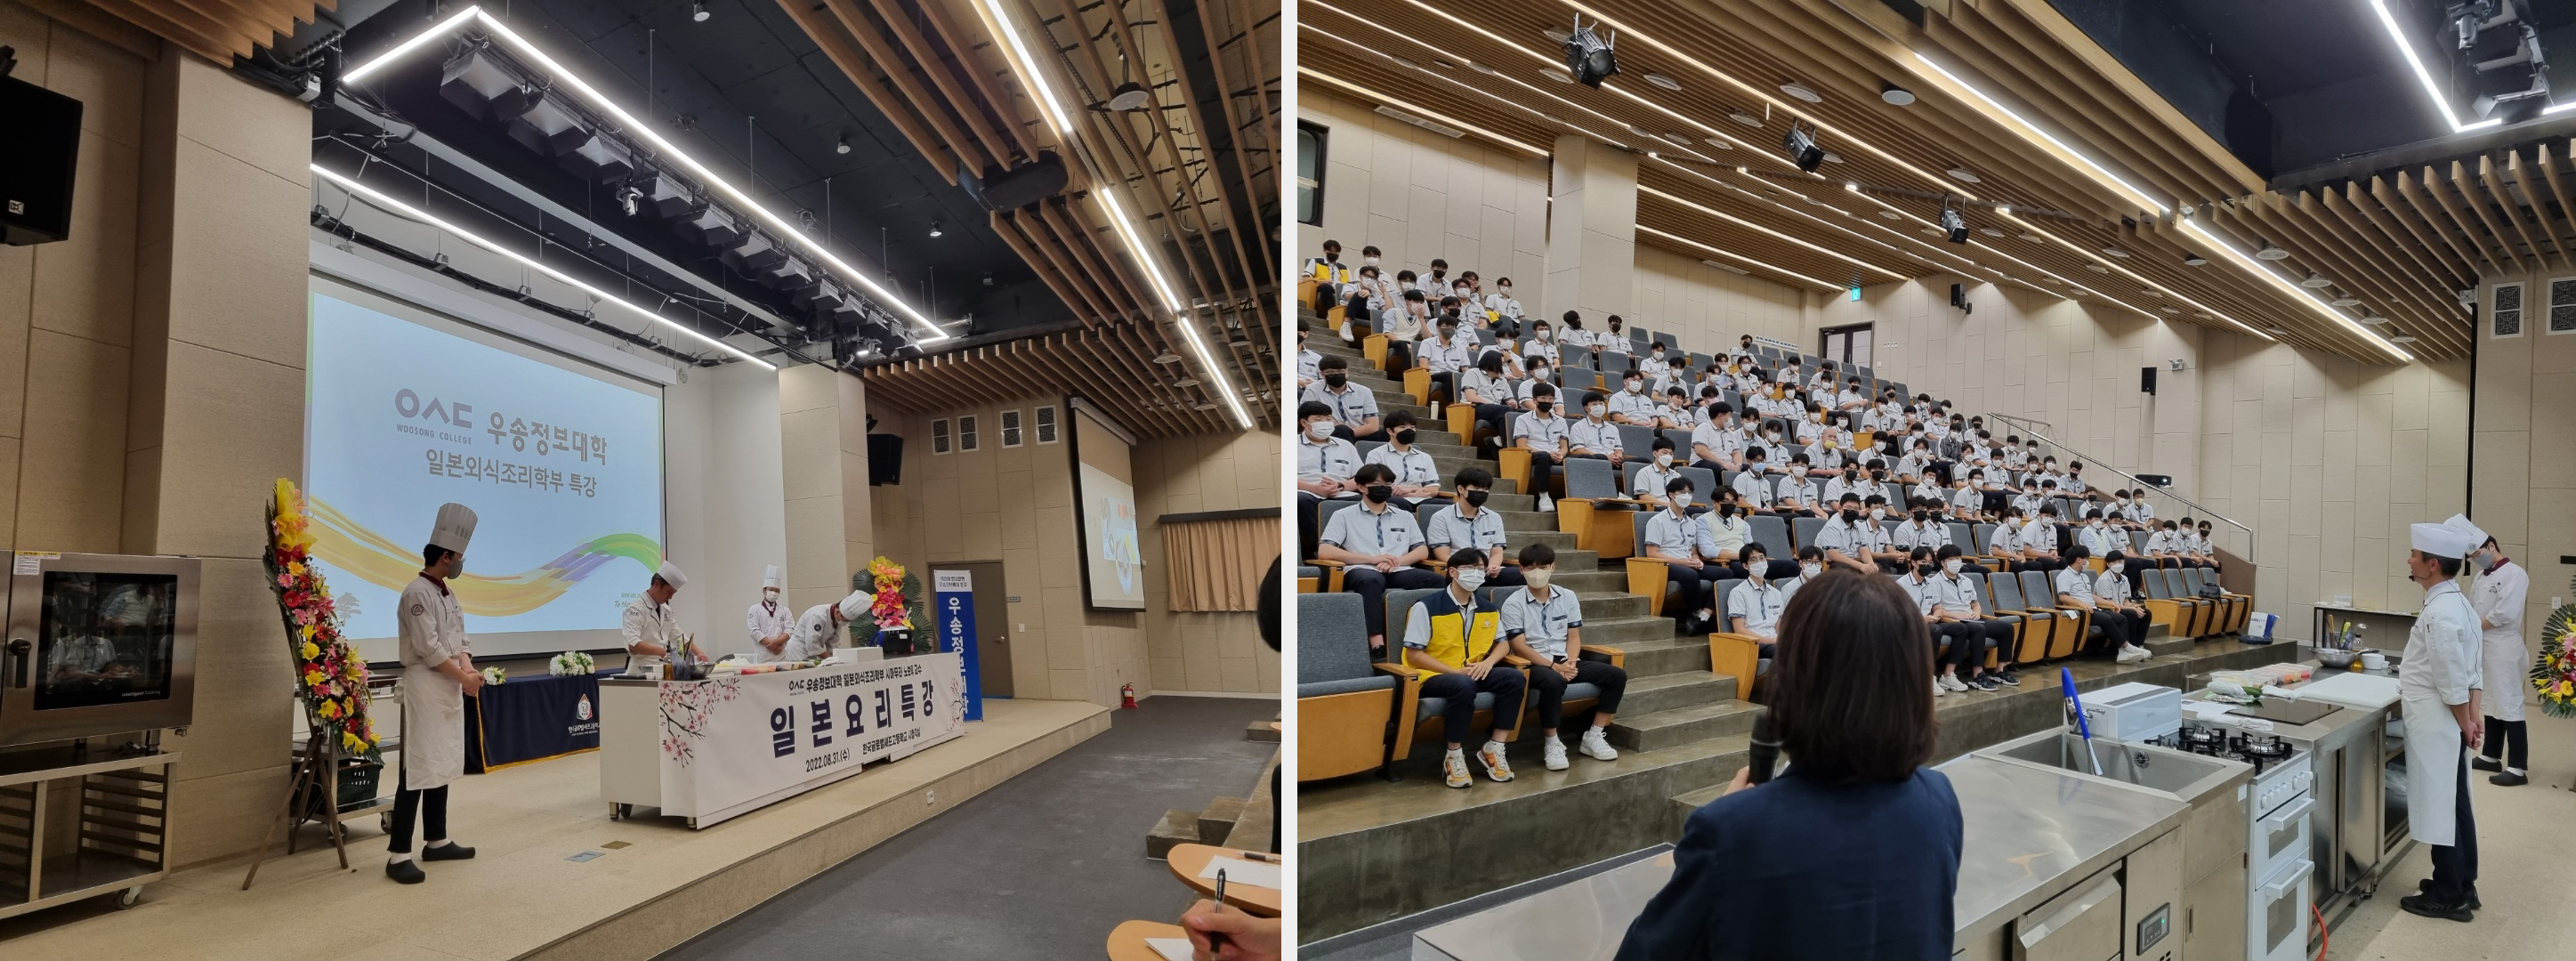 우송정보대학 일본외식조리학부 한국글로벌셰프고등학교 방문 시연 특강 진행